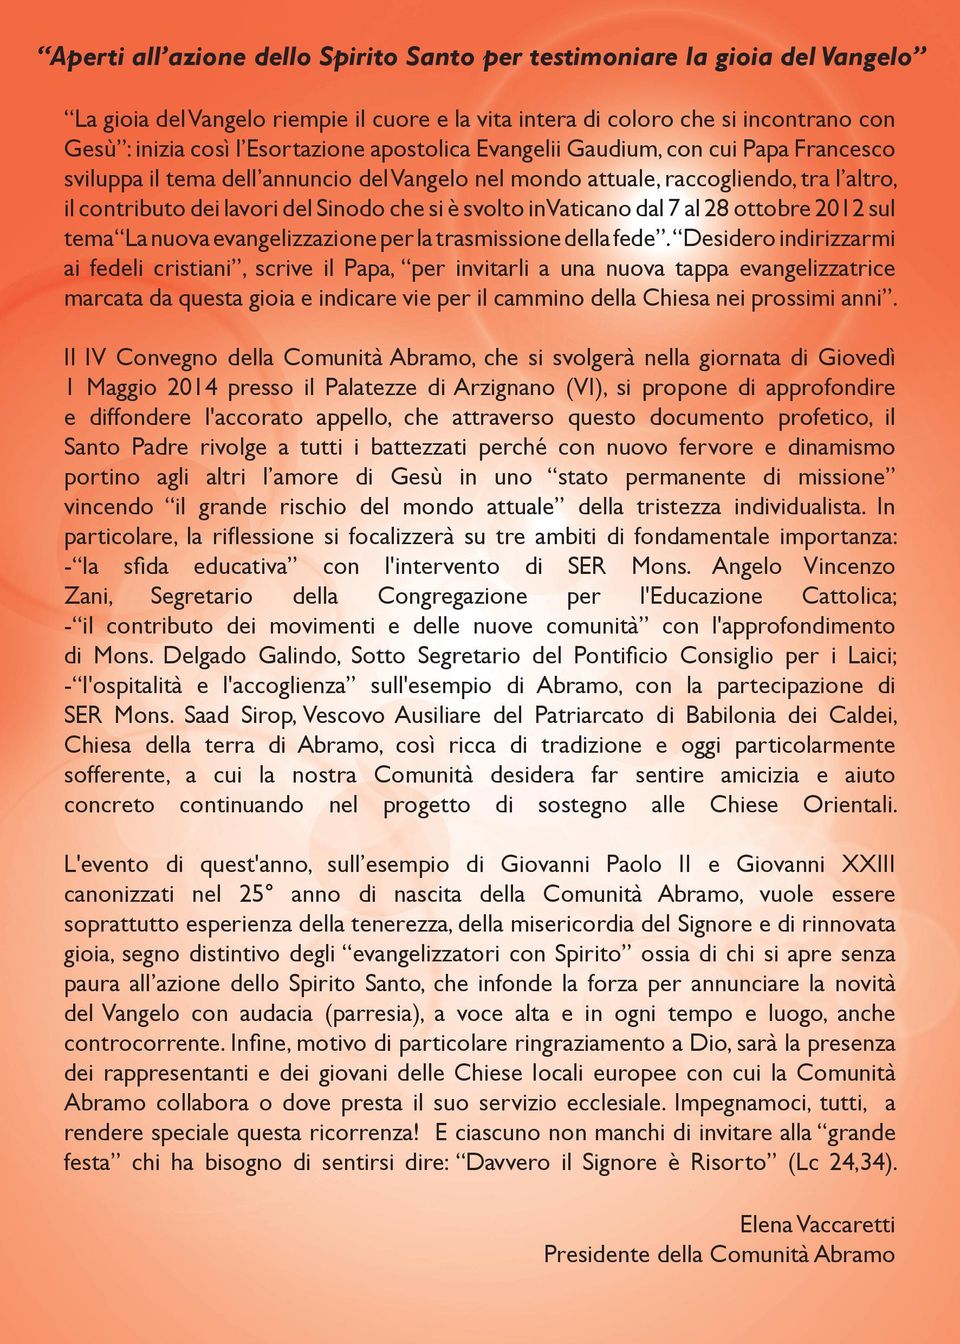 Vaticano dal 7 al 28 ottobre 2012 sul tema La nuova evangelizzazione per la trasmissione della fede.